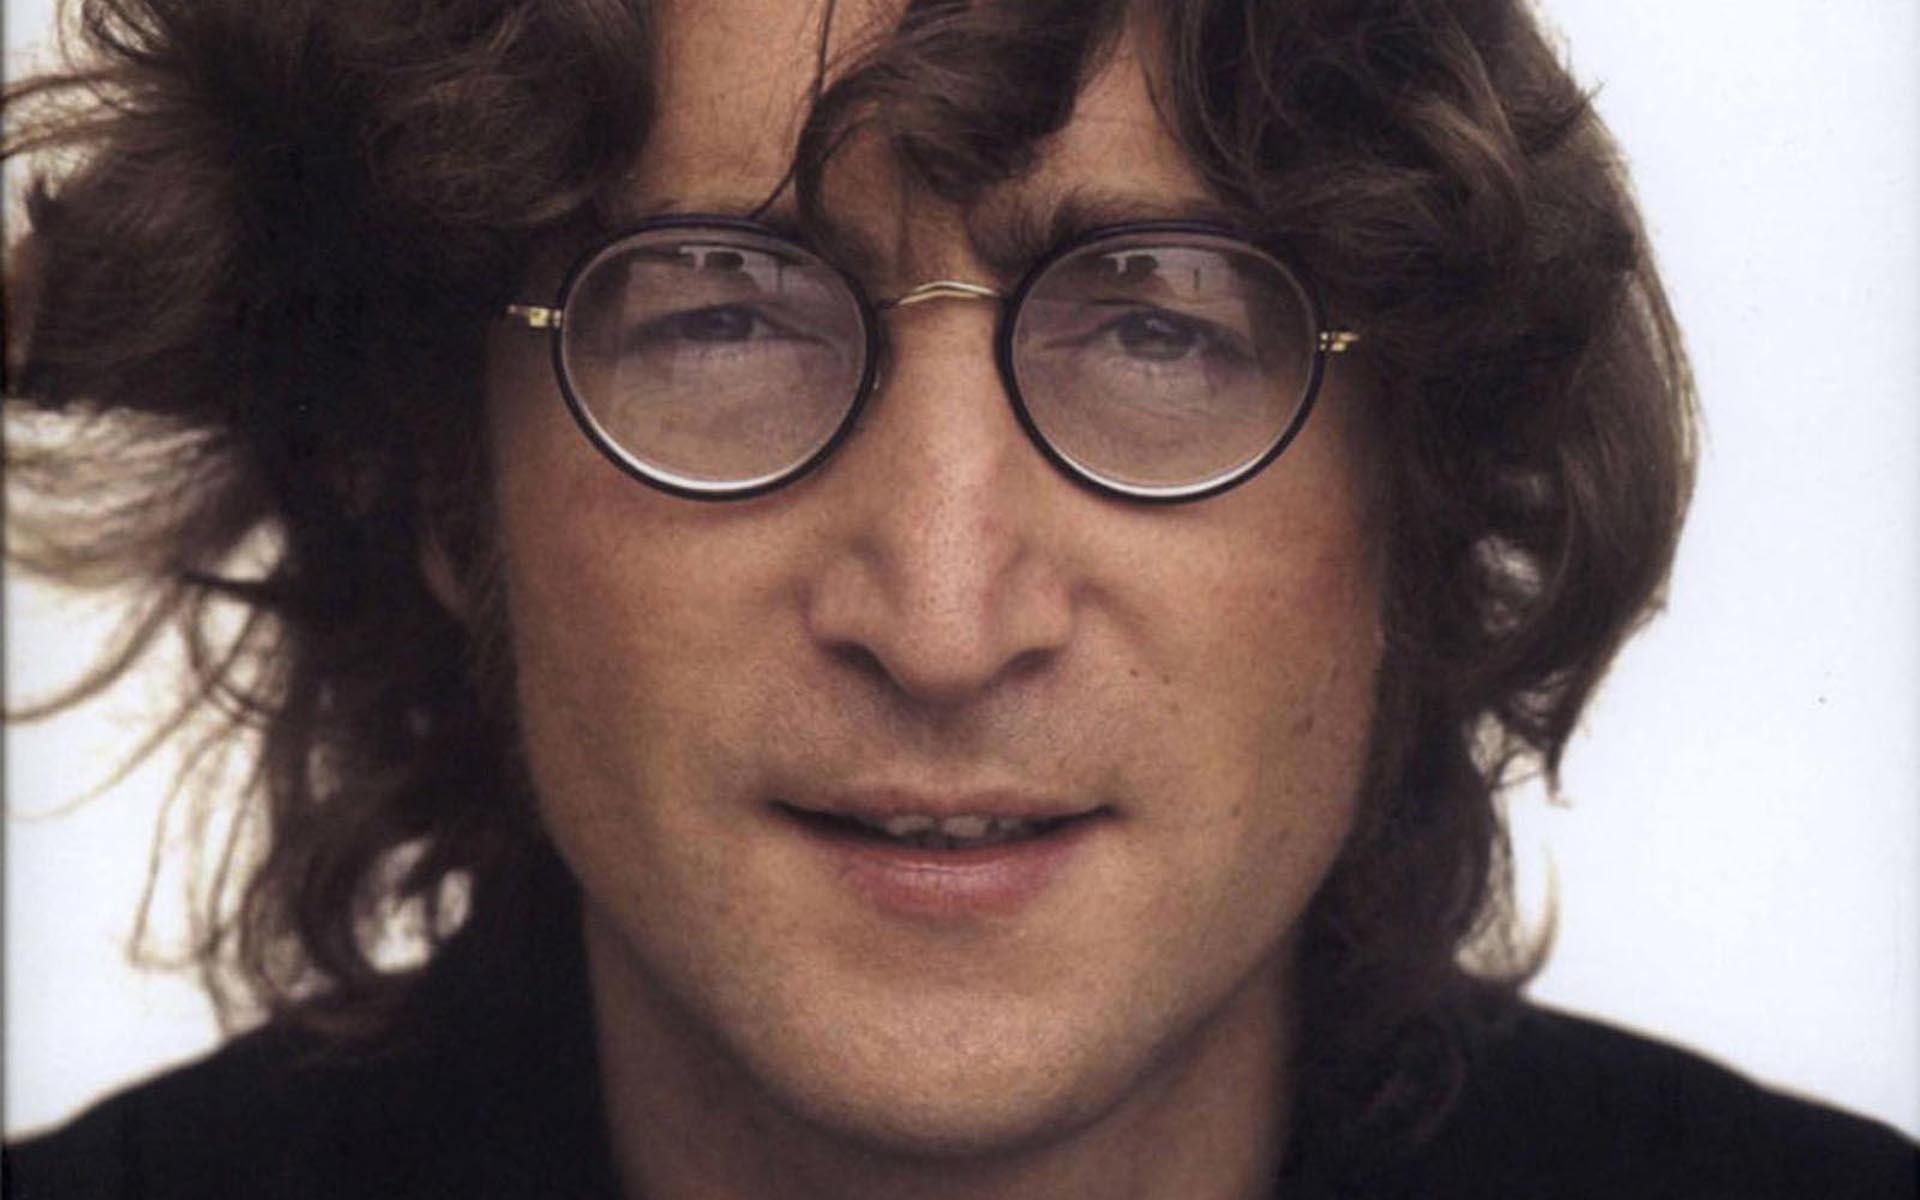 10 интересных фактов о Джоне Ленноне, которые никому не известны